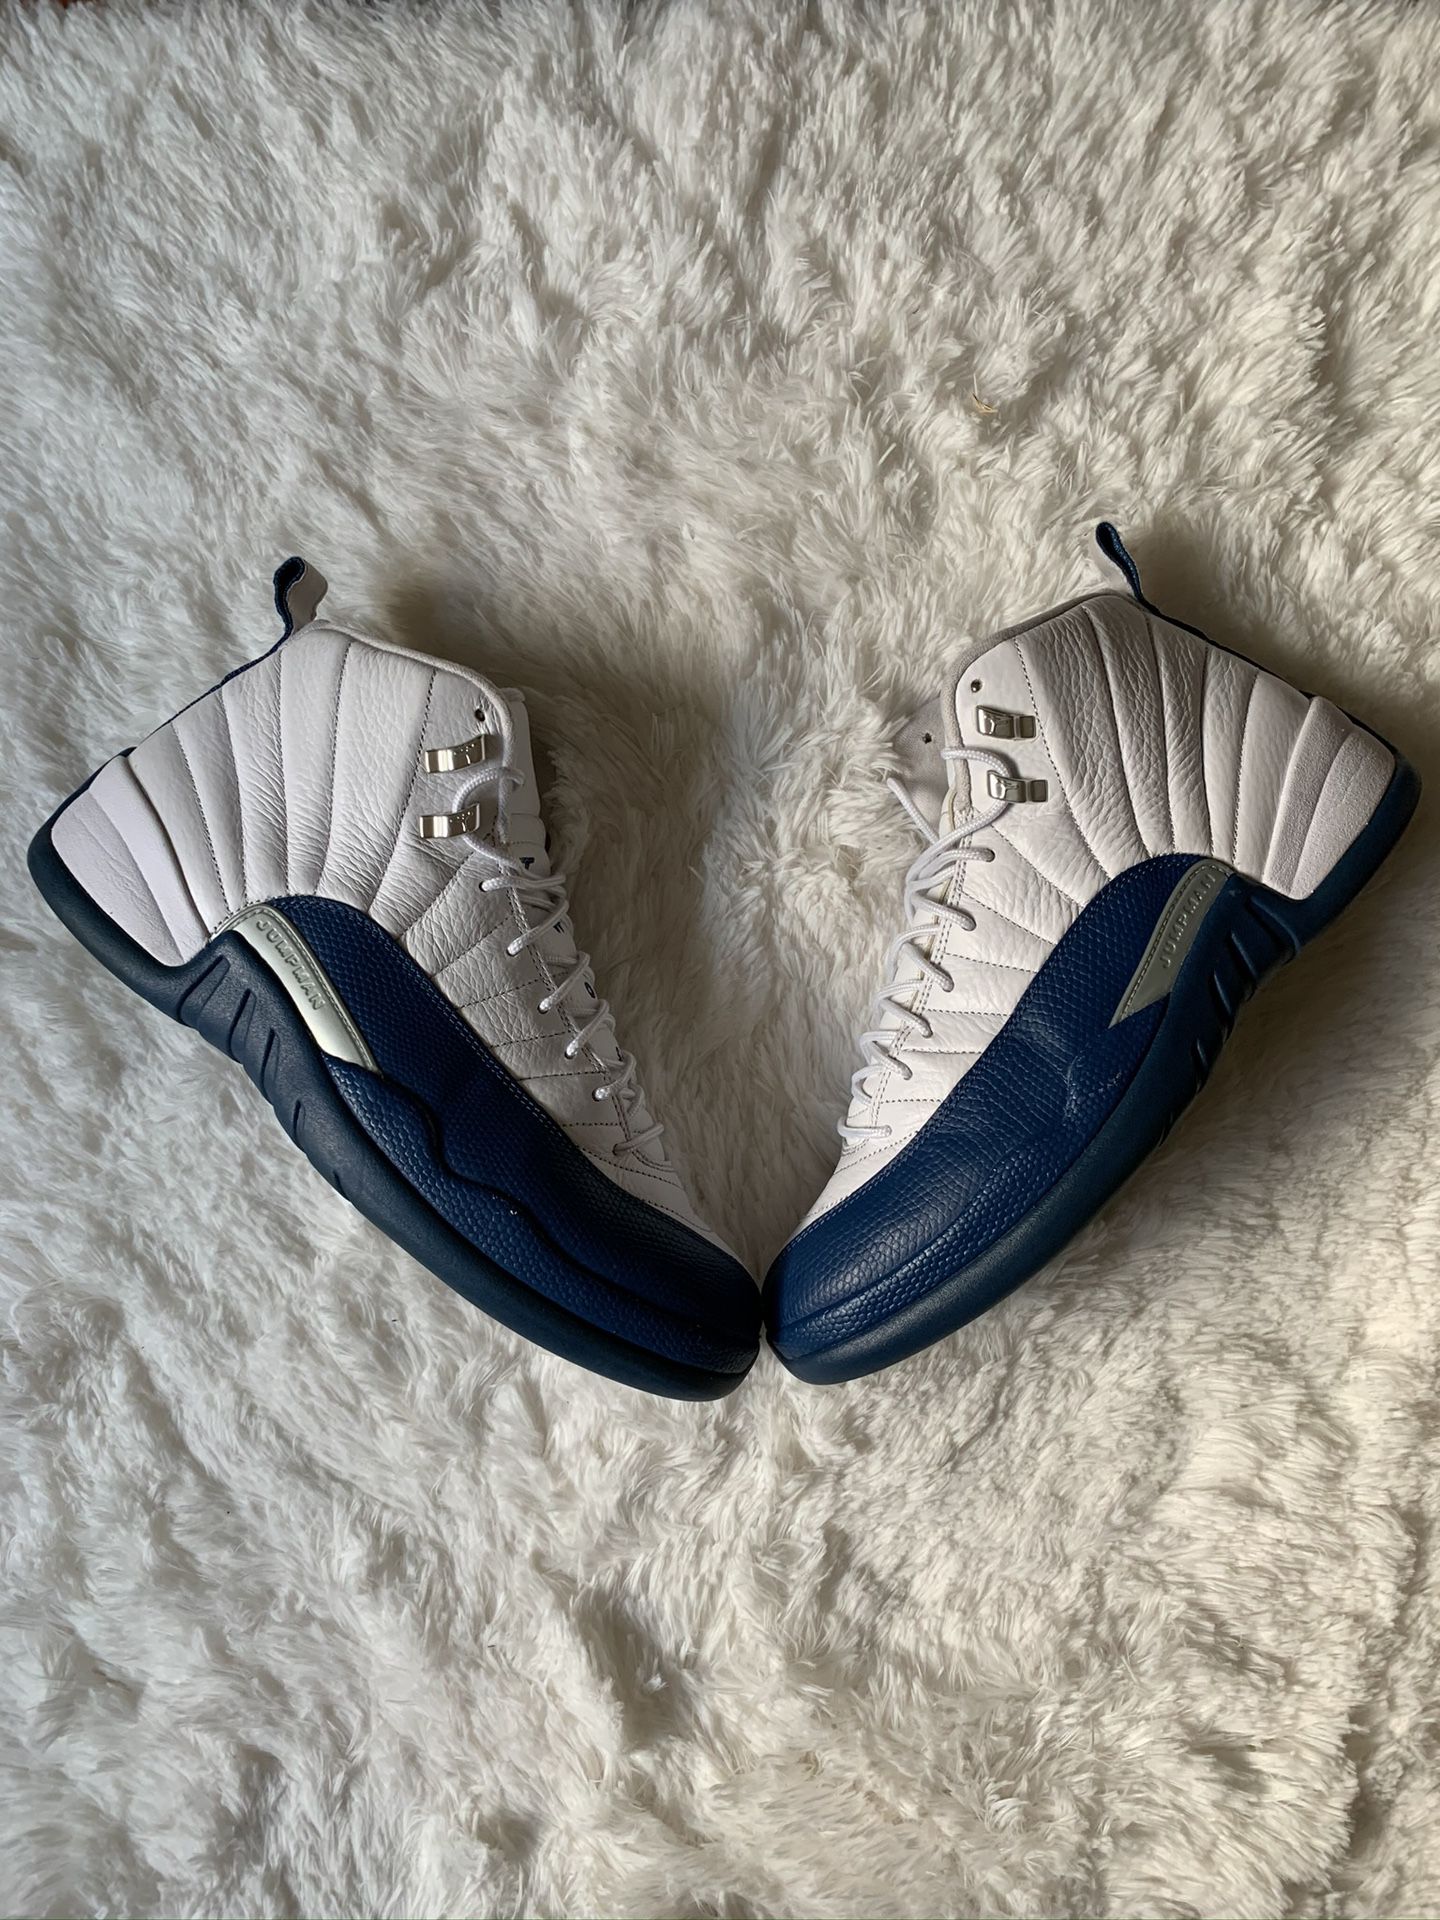 Jordan 12 French blue size 12